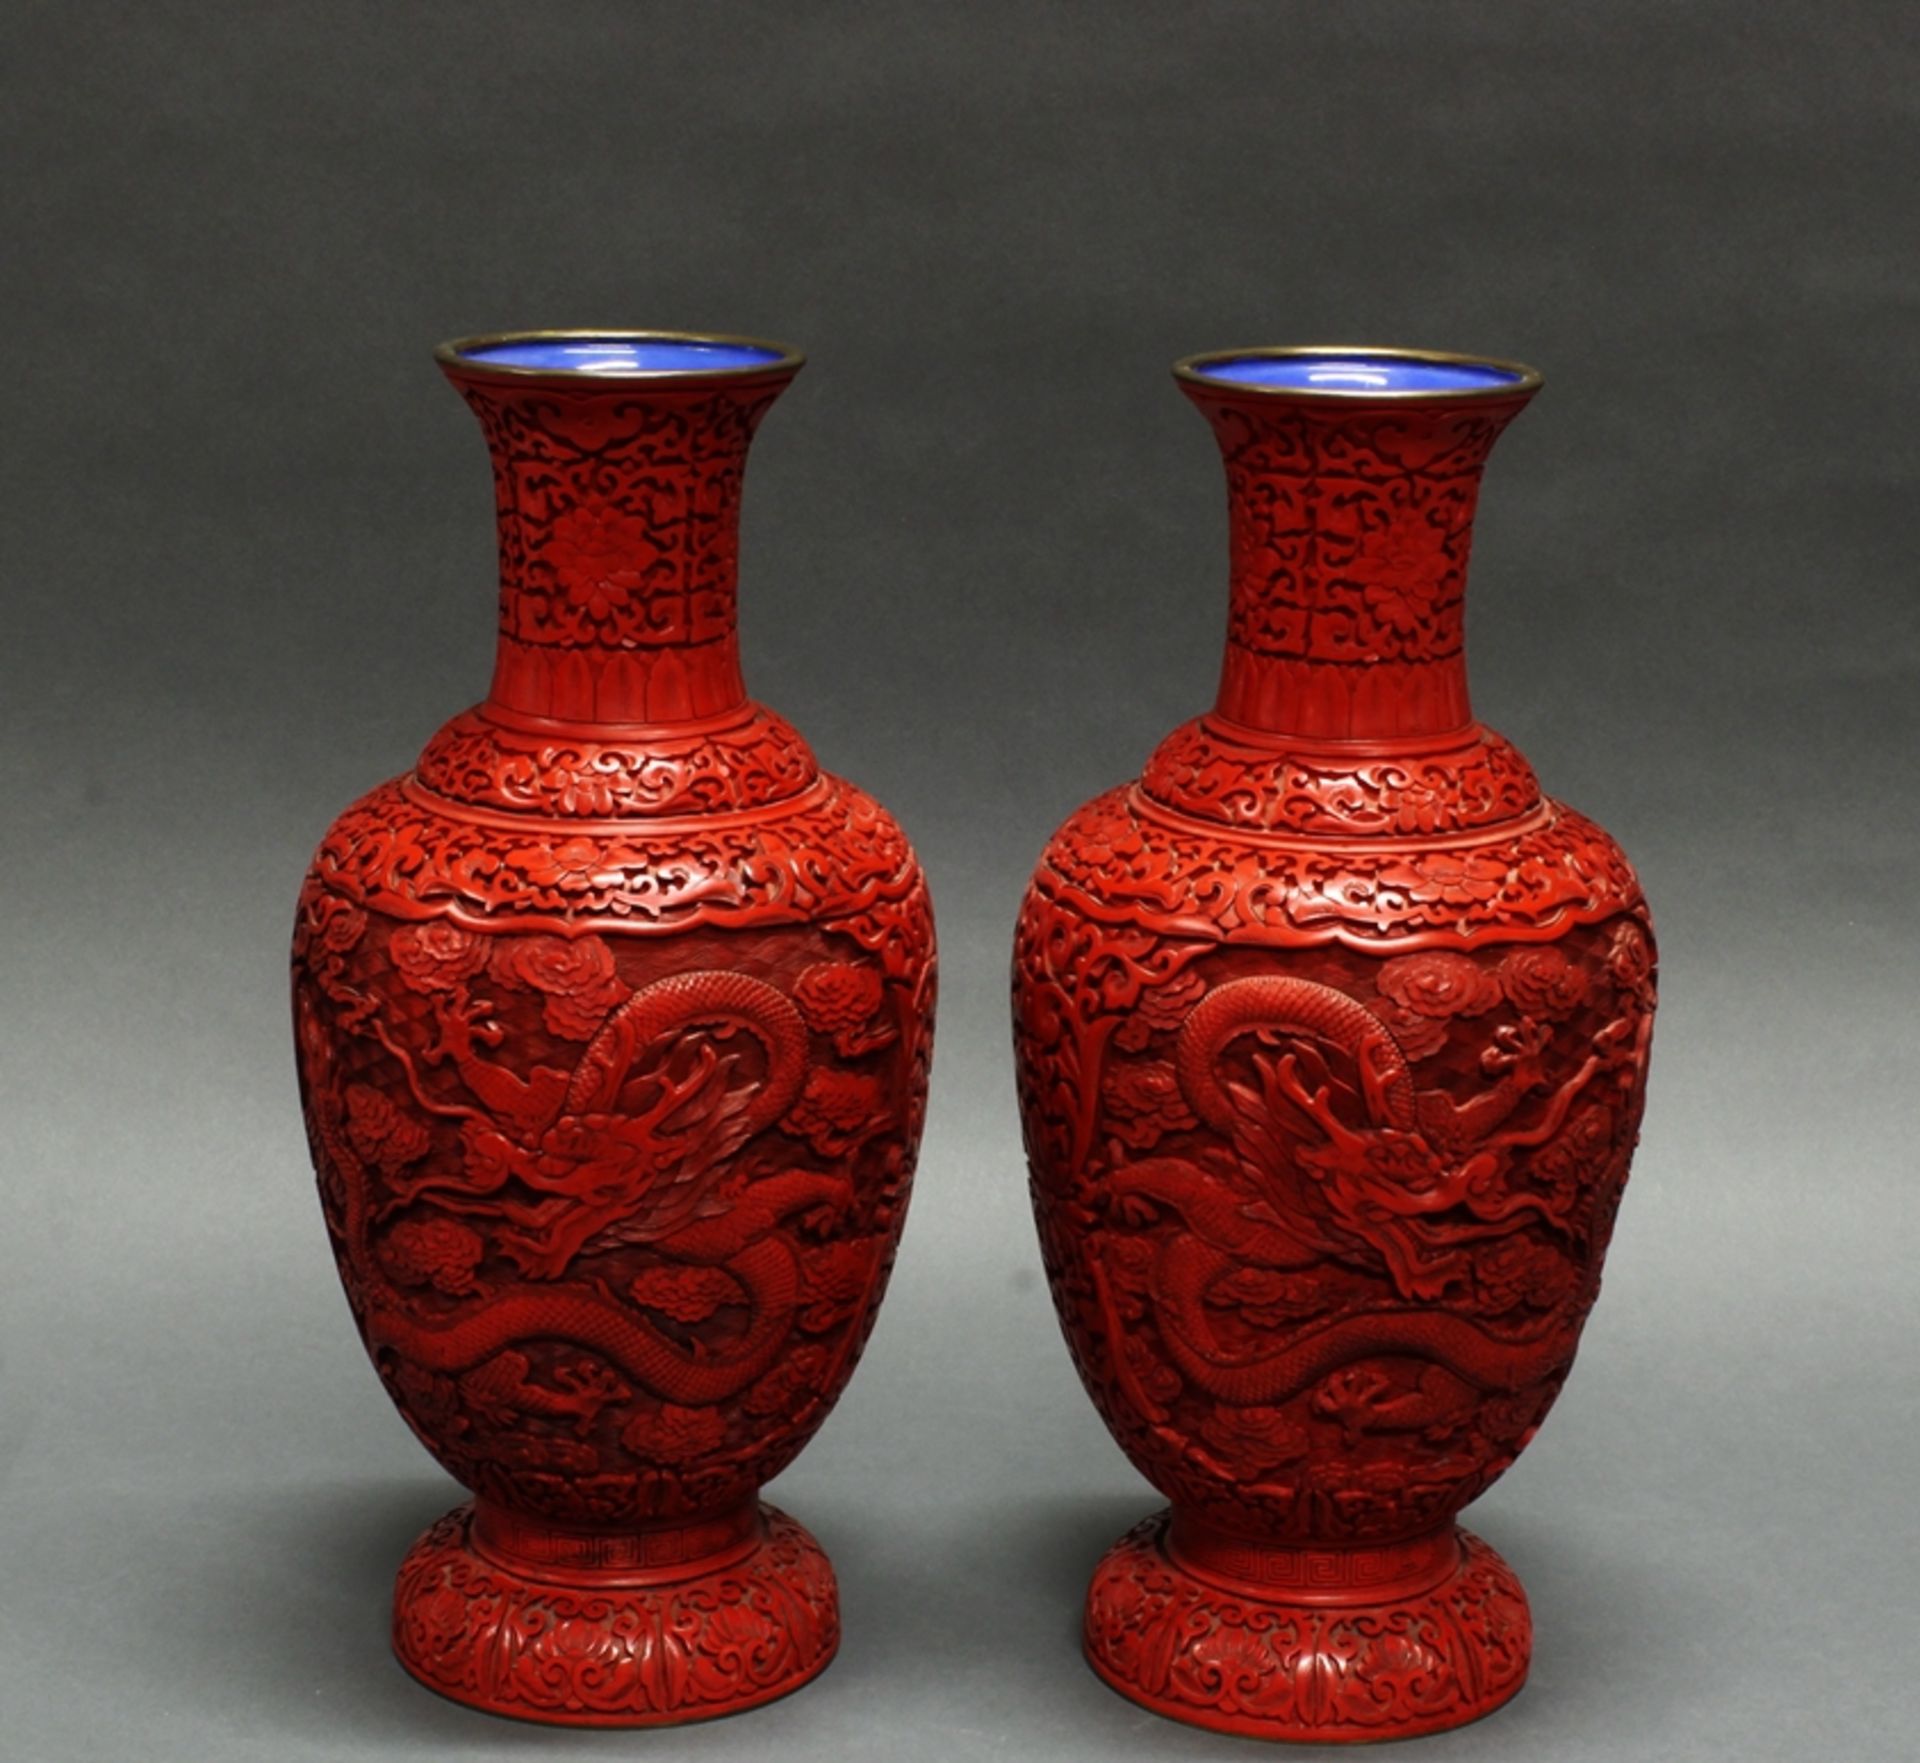 Paar Balustervasen, China, neuzeitlich, roter Schnitzlack auf Metall, Reserven mit Drachen zwischen